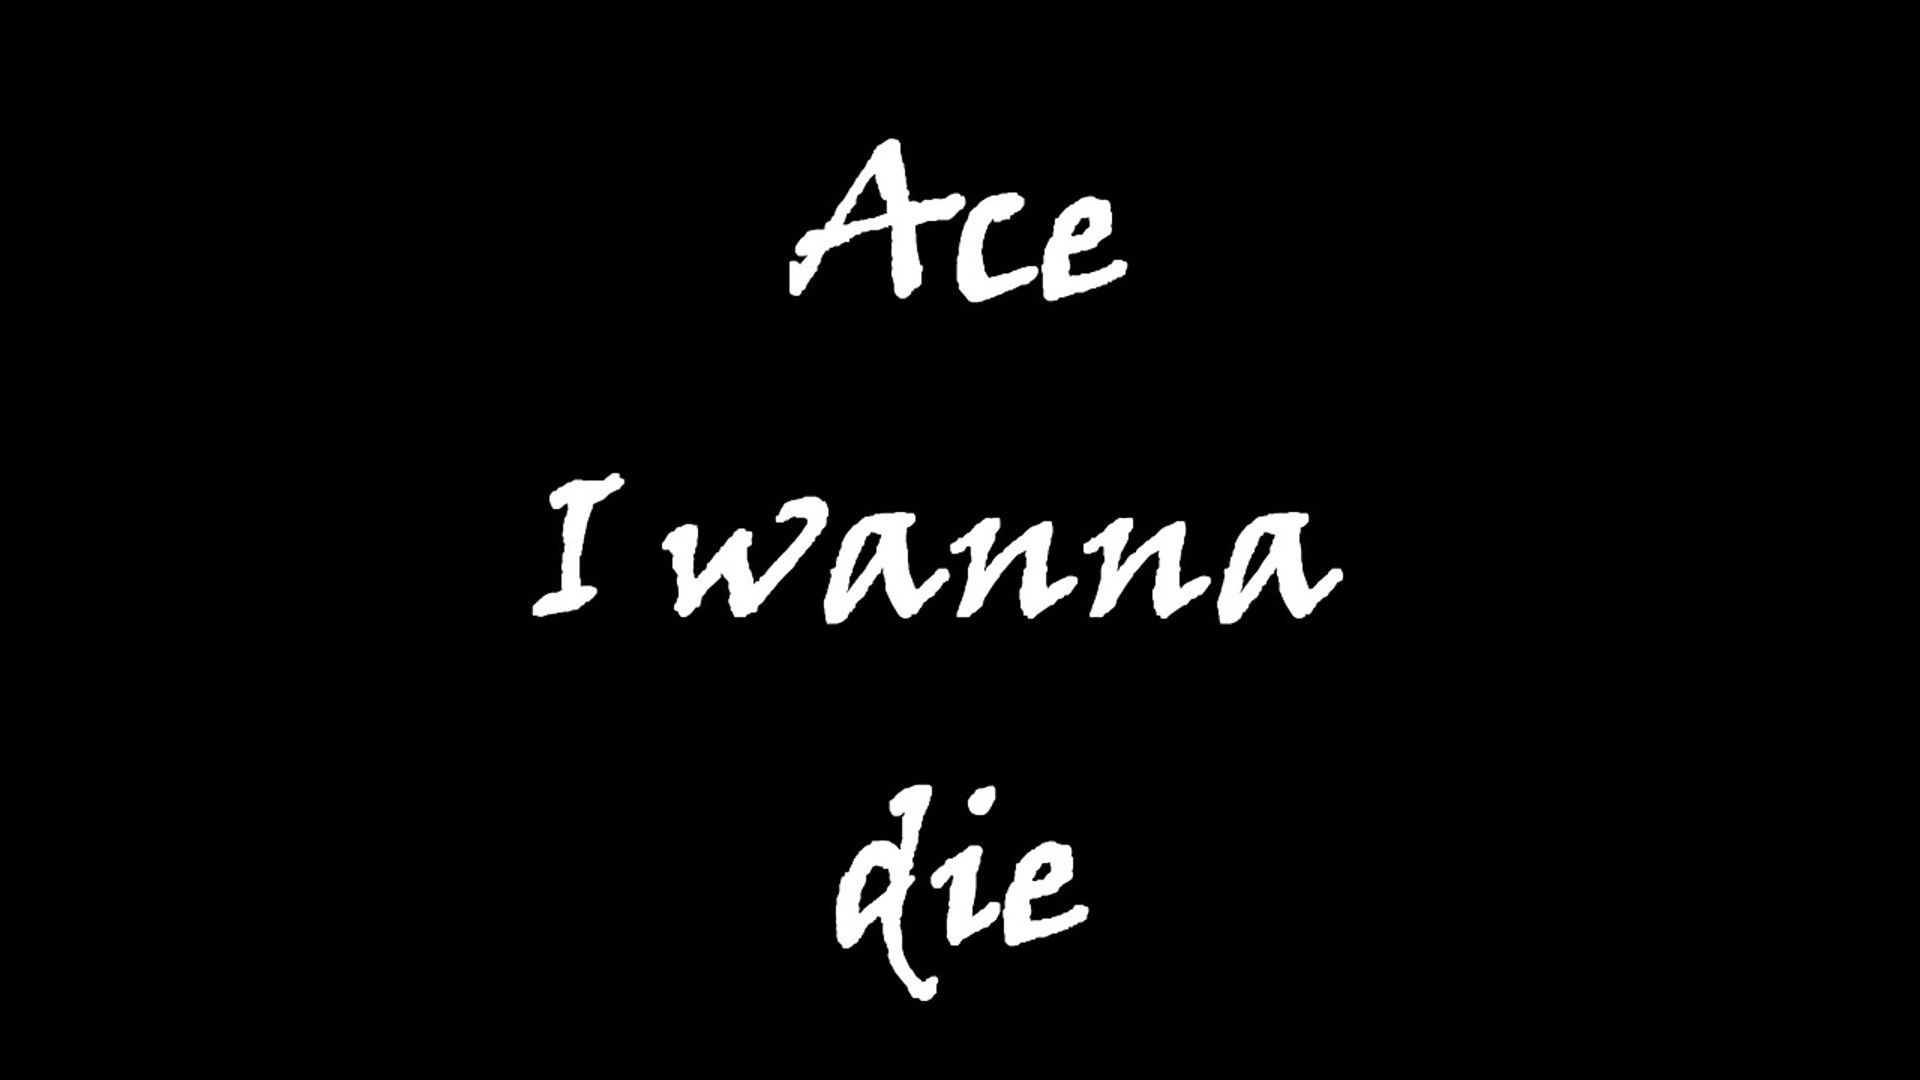 Ace wanna die